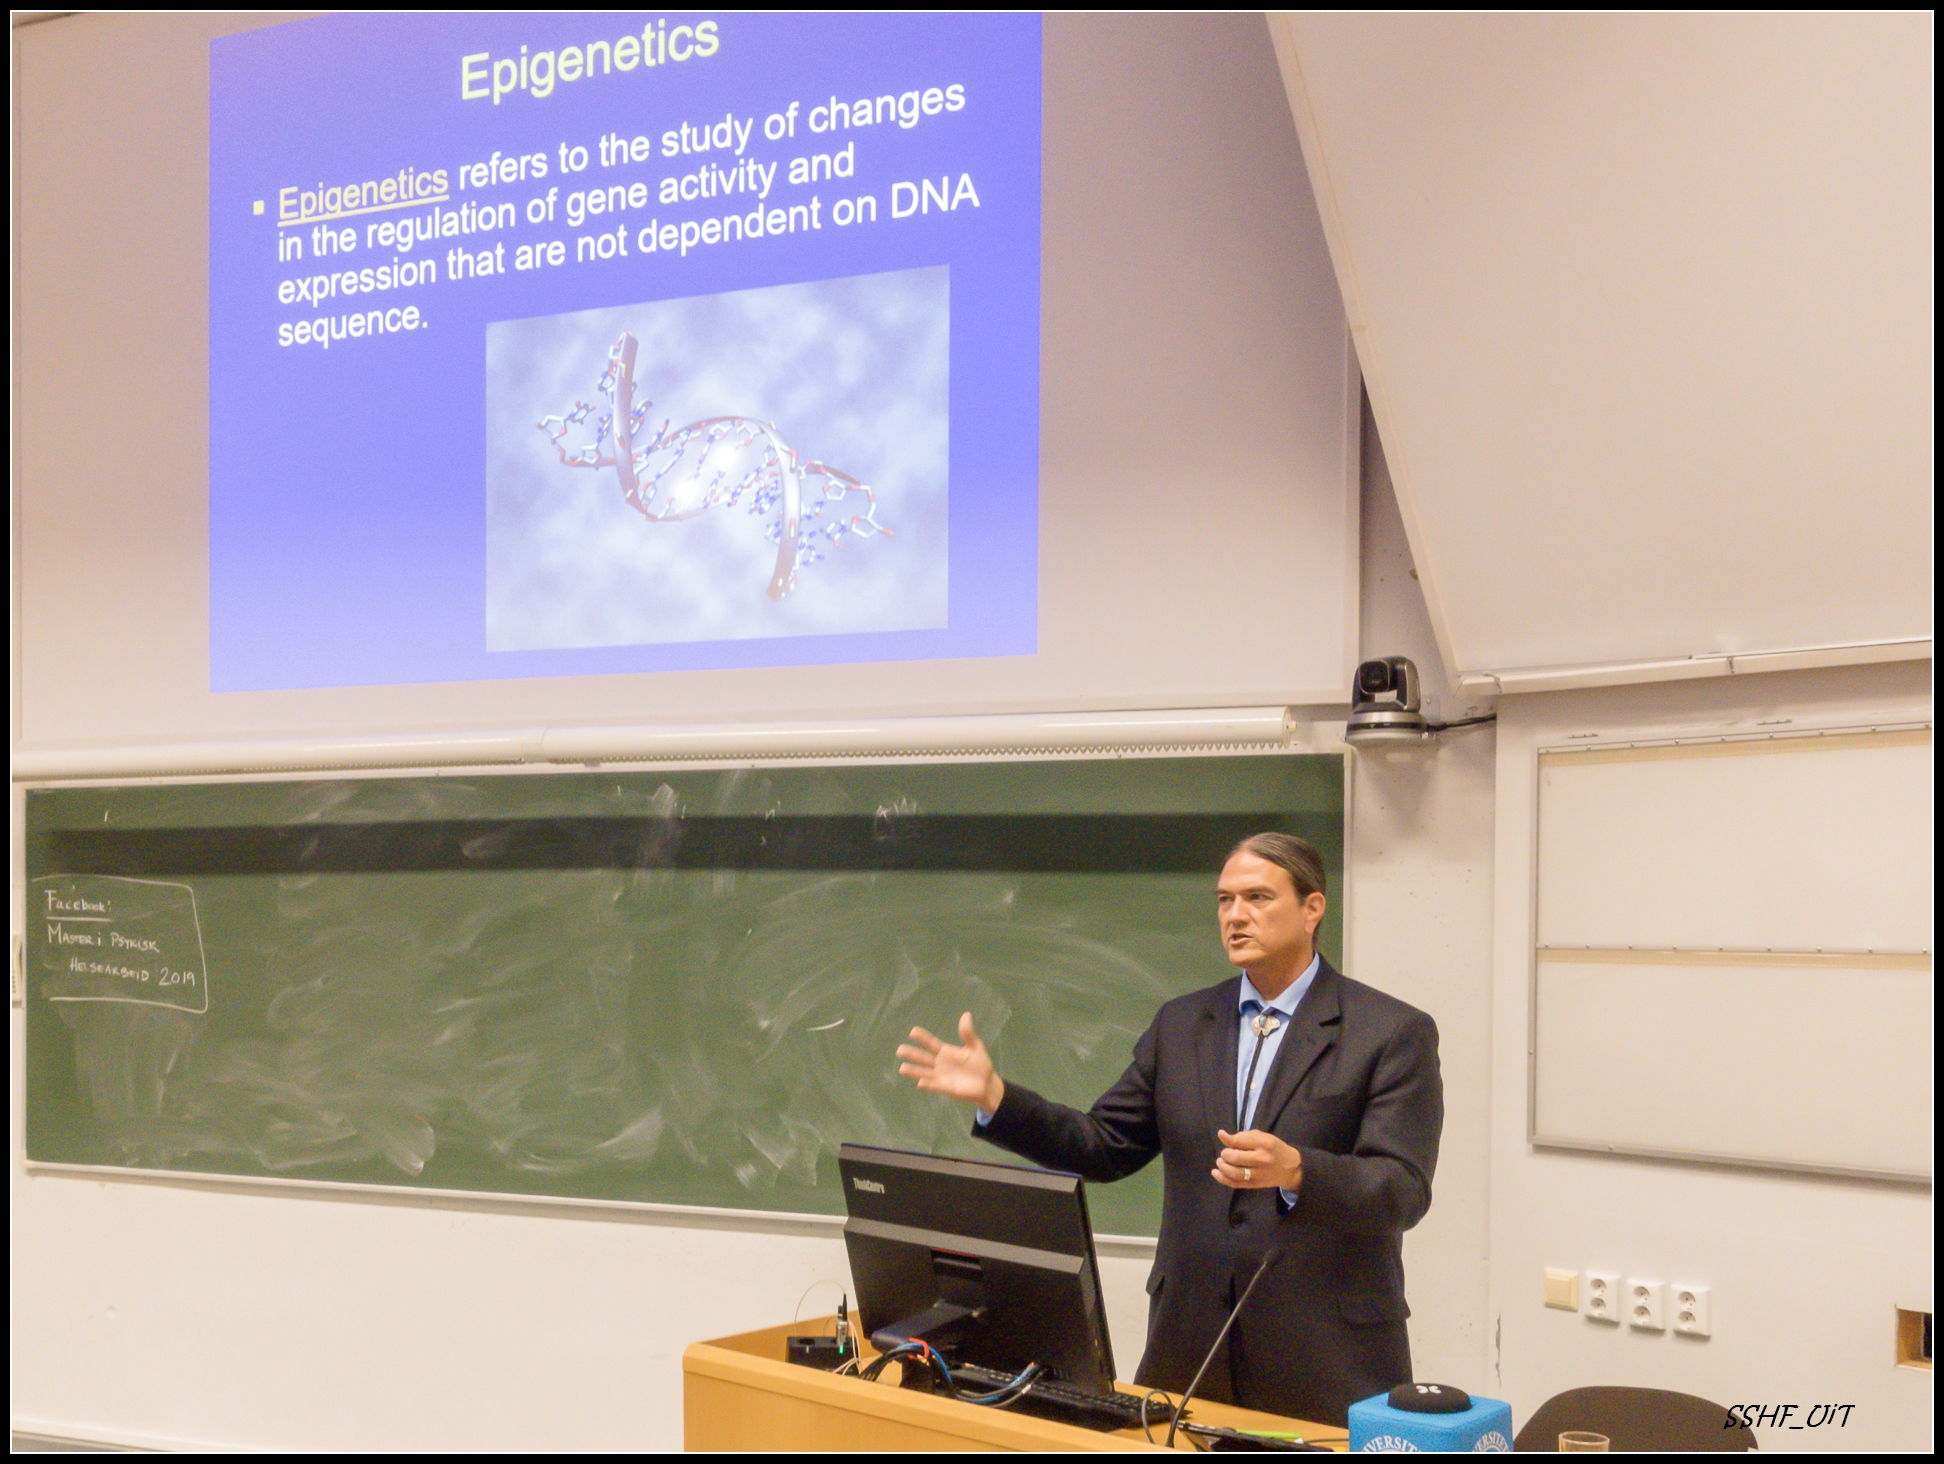 Warne talks about epigenetics